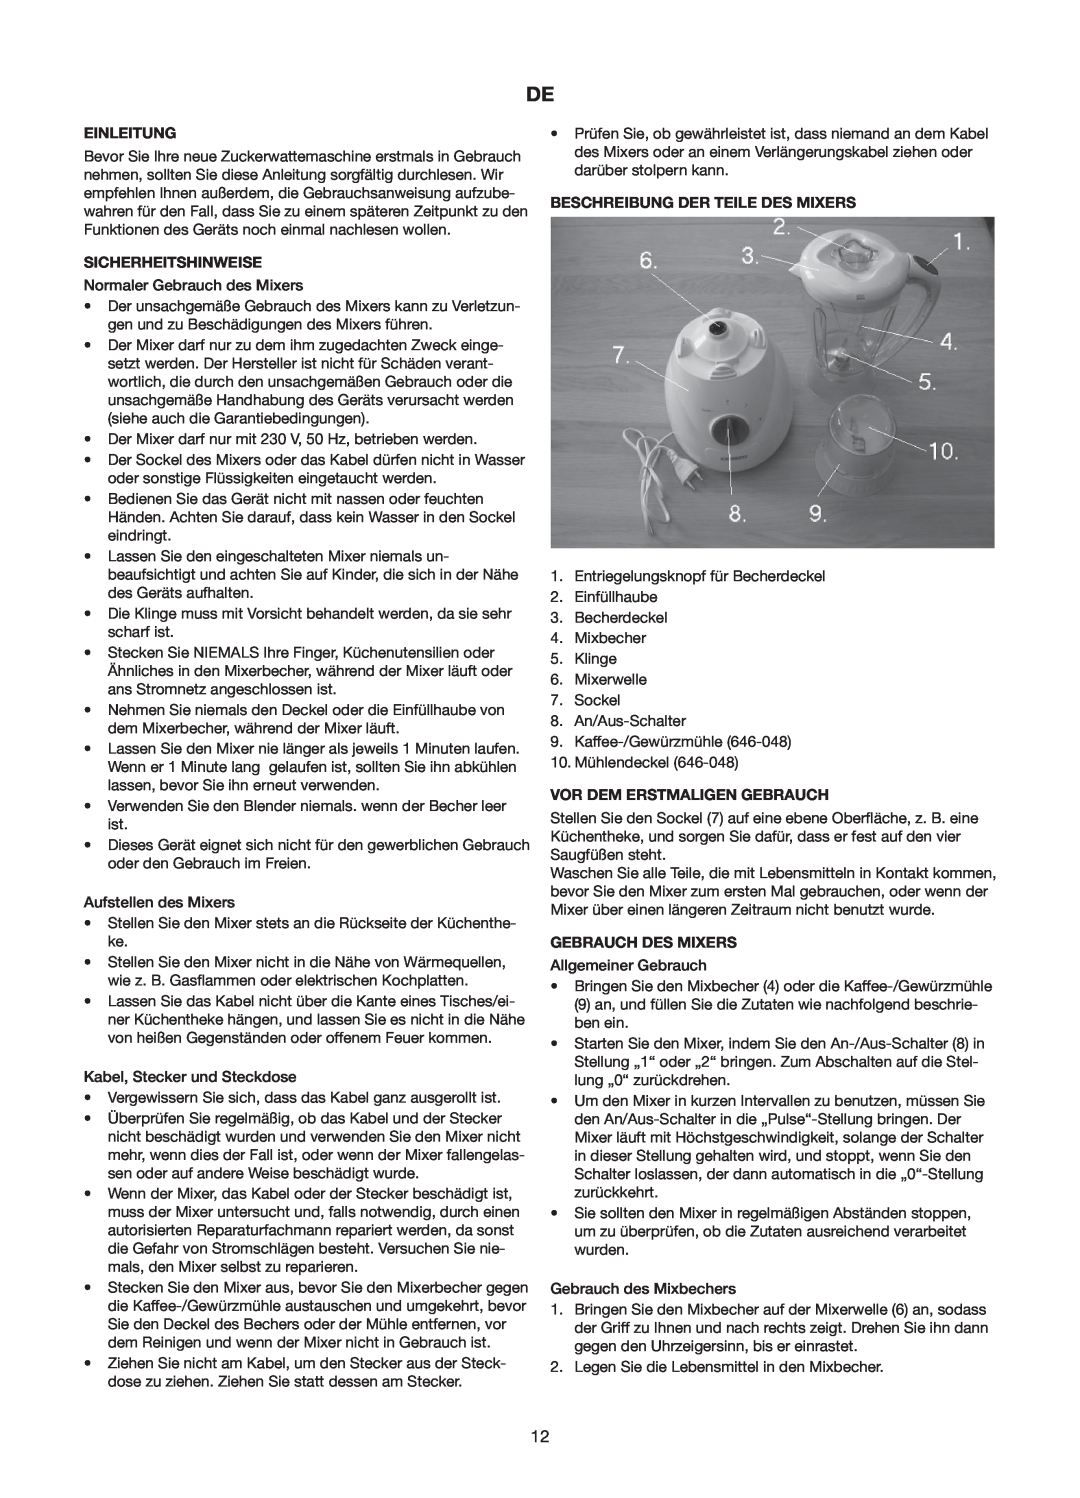 Melissa 646-047/48 manual Einleitung, Sicherheitshinweise, Beschreibung Der Teile Des Mixers, Vor Dem Erstmaligen Gebrauch 